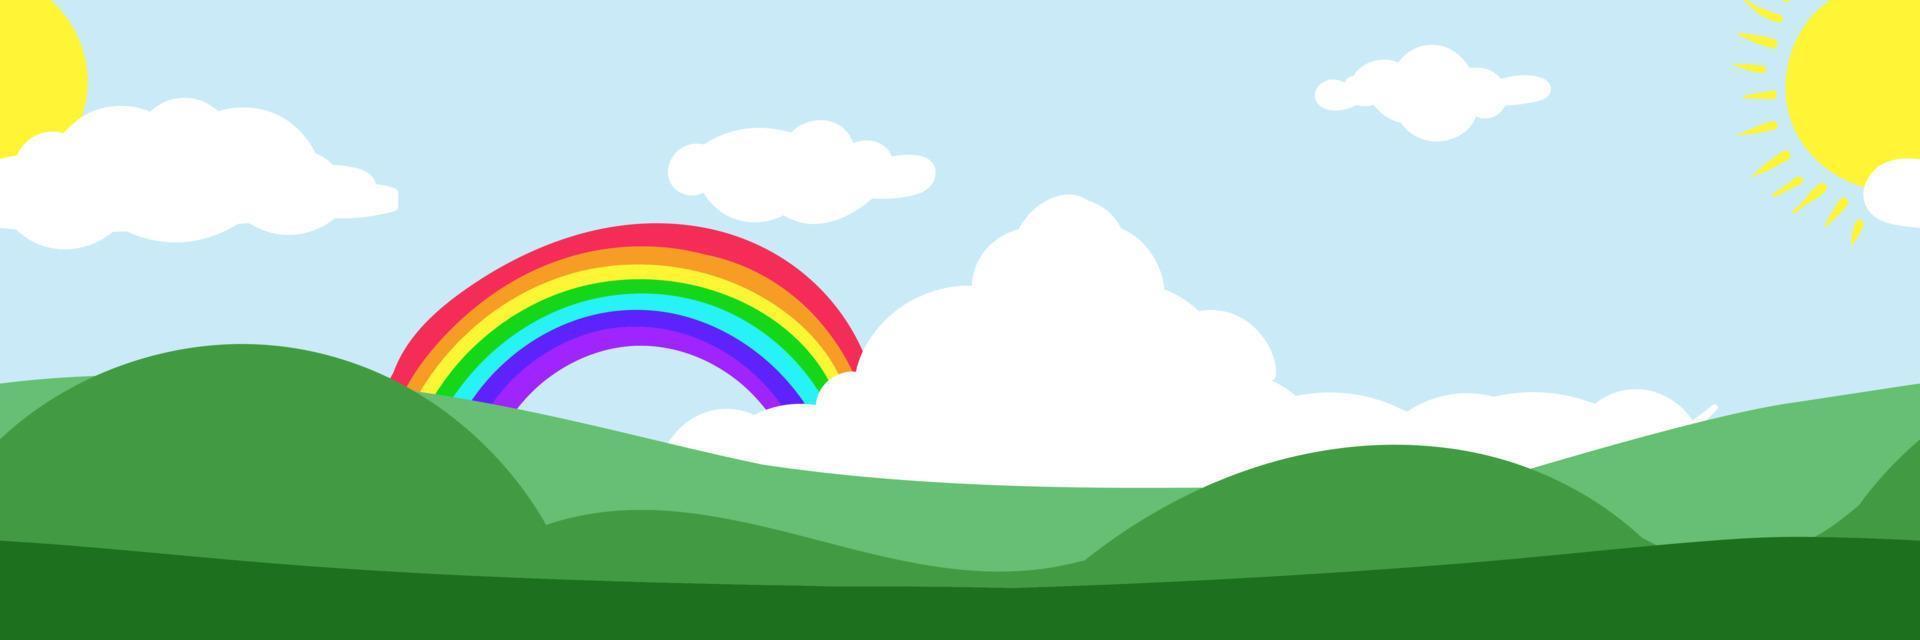 fundo tileable paisagem de prado feliz em dia ensolarado com desenho de arco-íris crianças padrão walpaper vetor